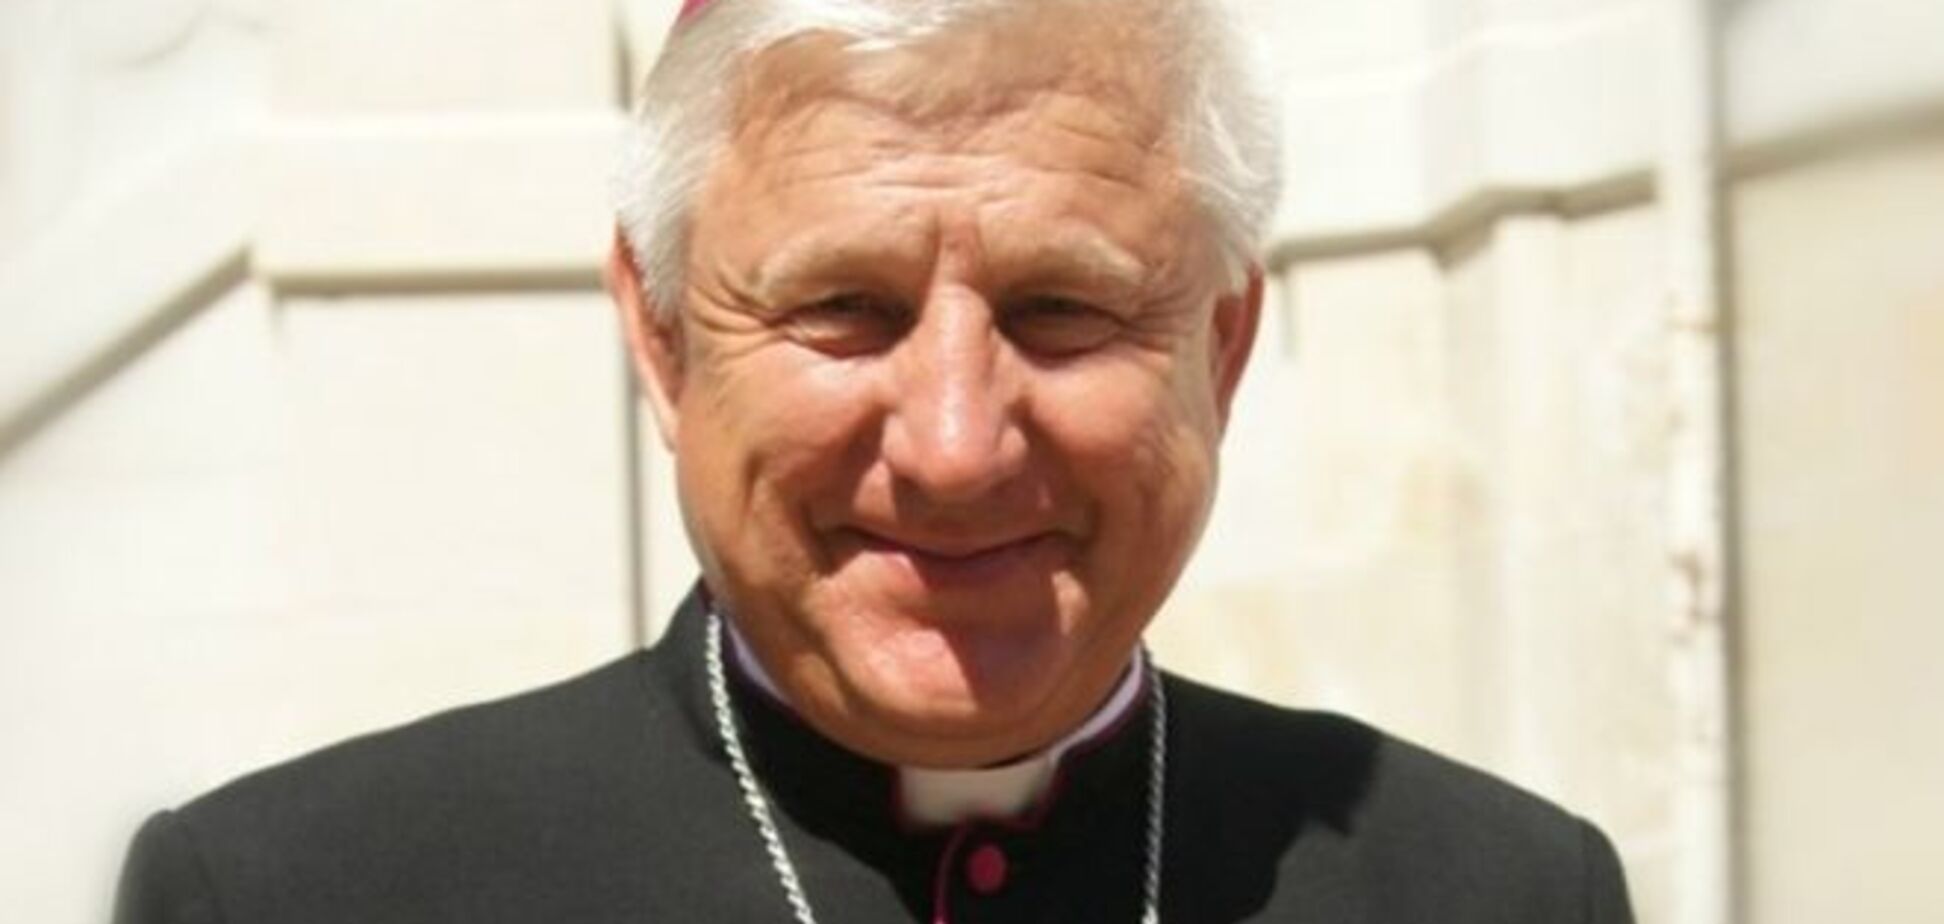 Єпископ не вірить, що Папа Франциск змінить 'диявольську натуру' Путіна